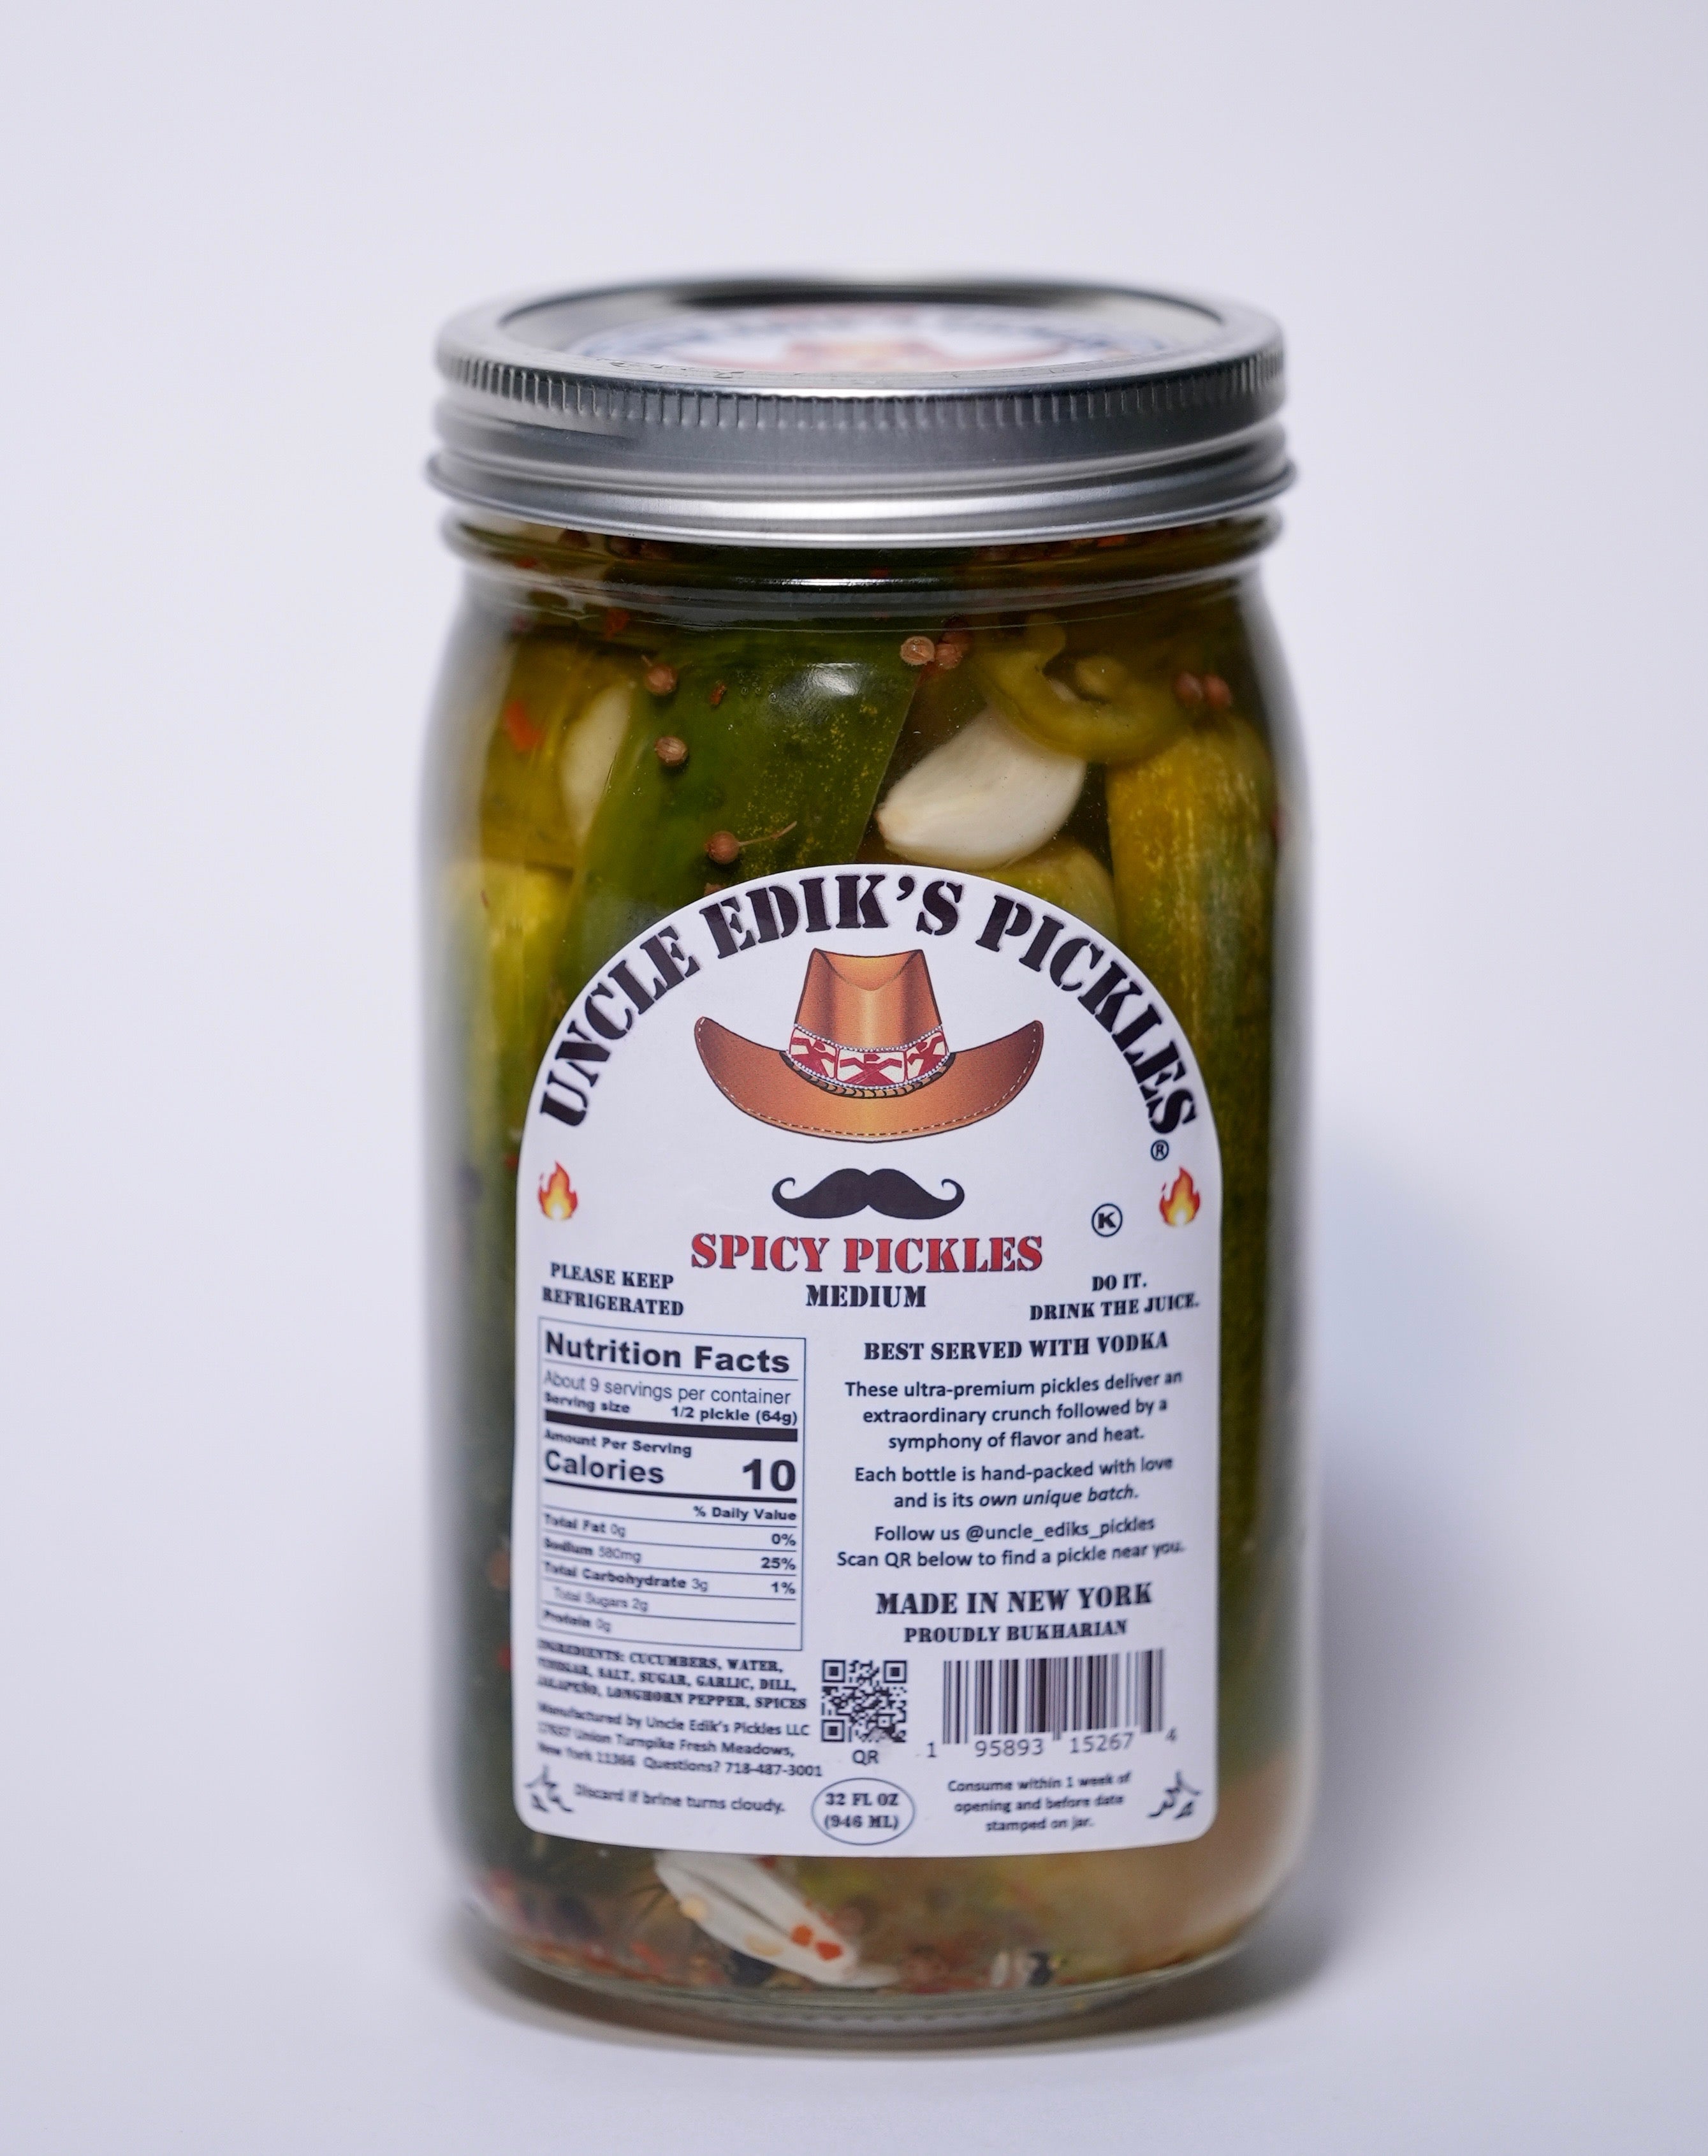 Uncle Edik's Pickles - Spicy Pickles